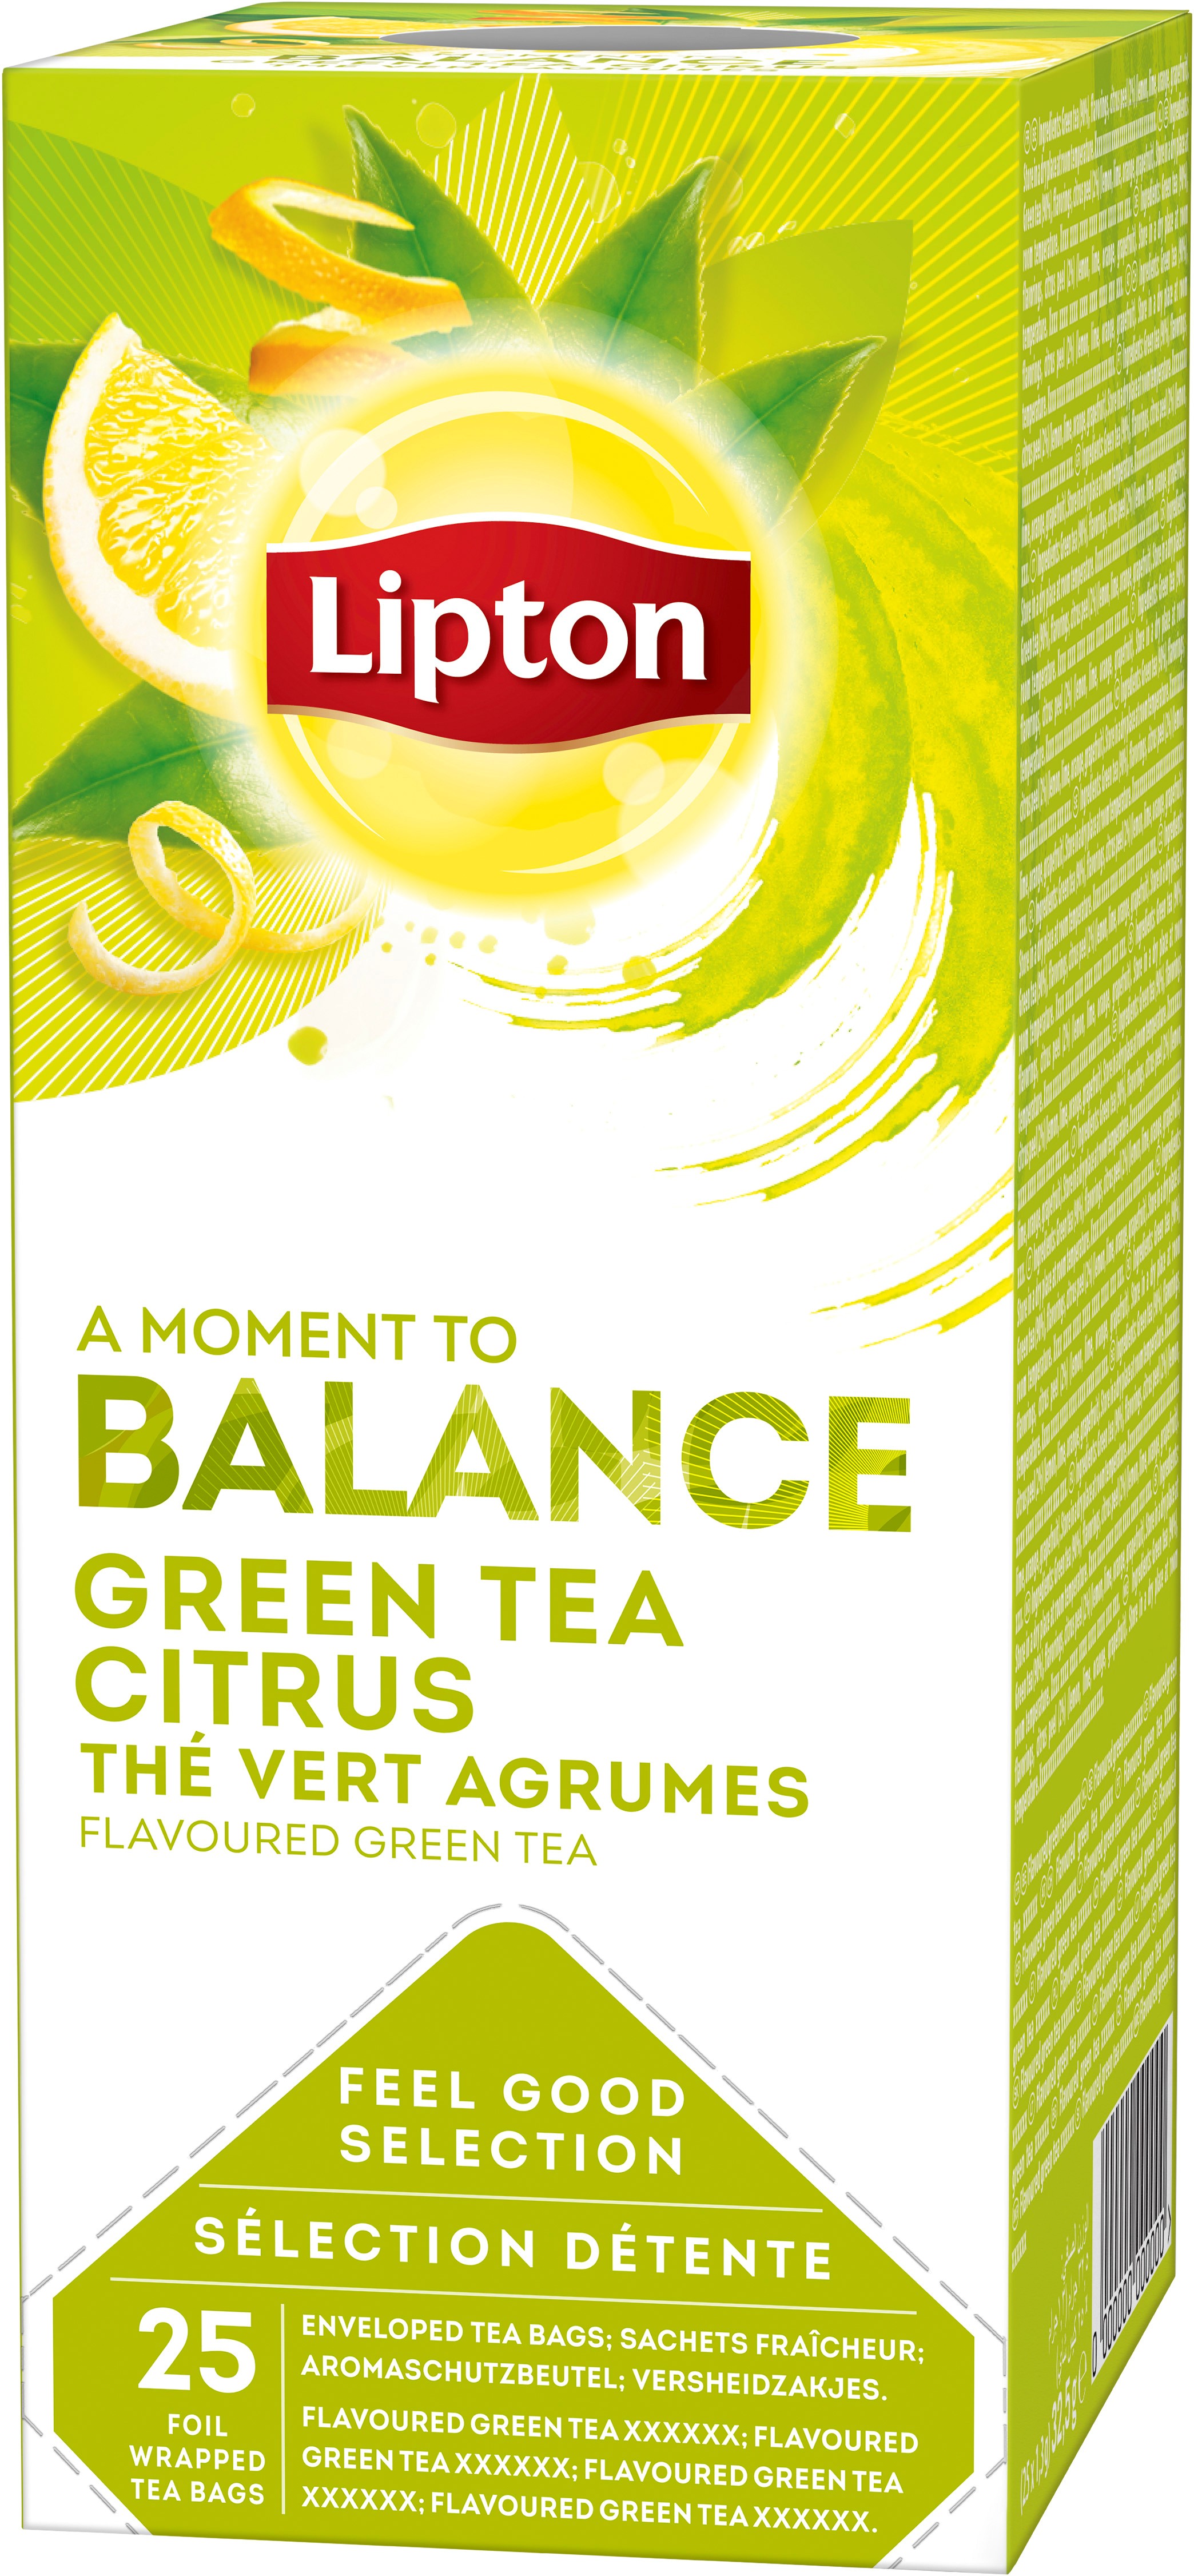 Green tea citrus 3-p